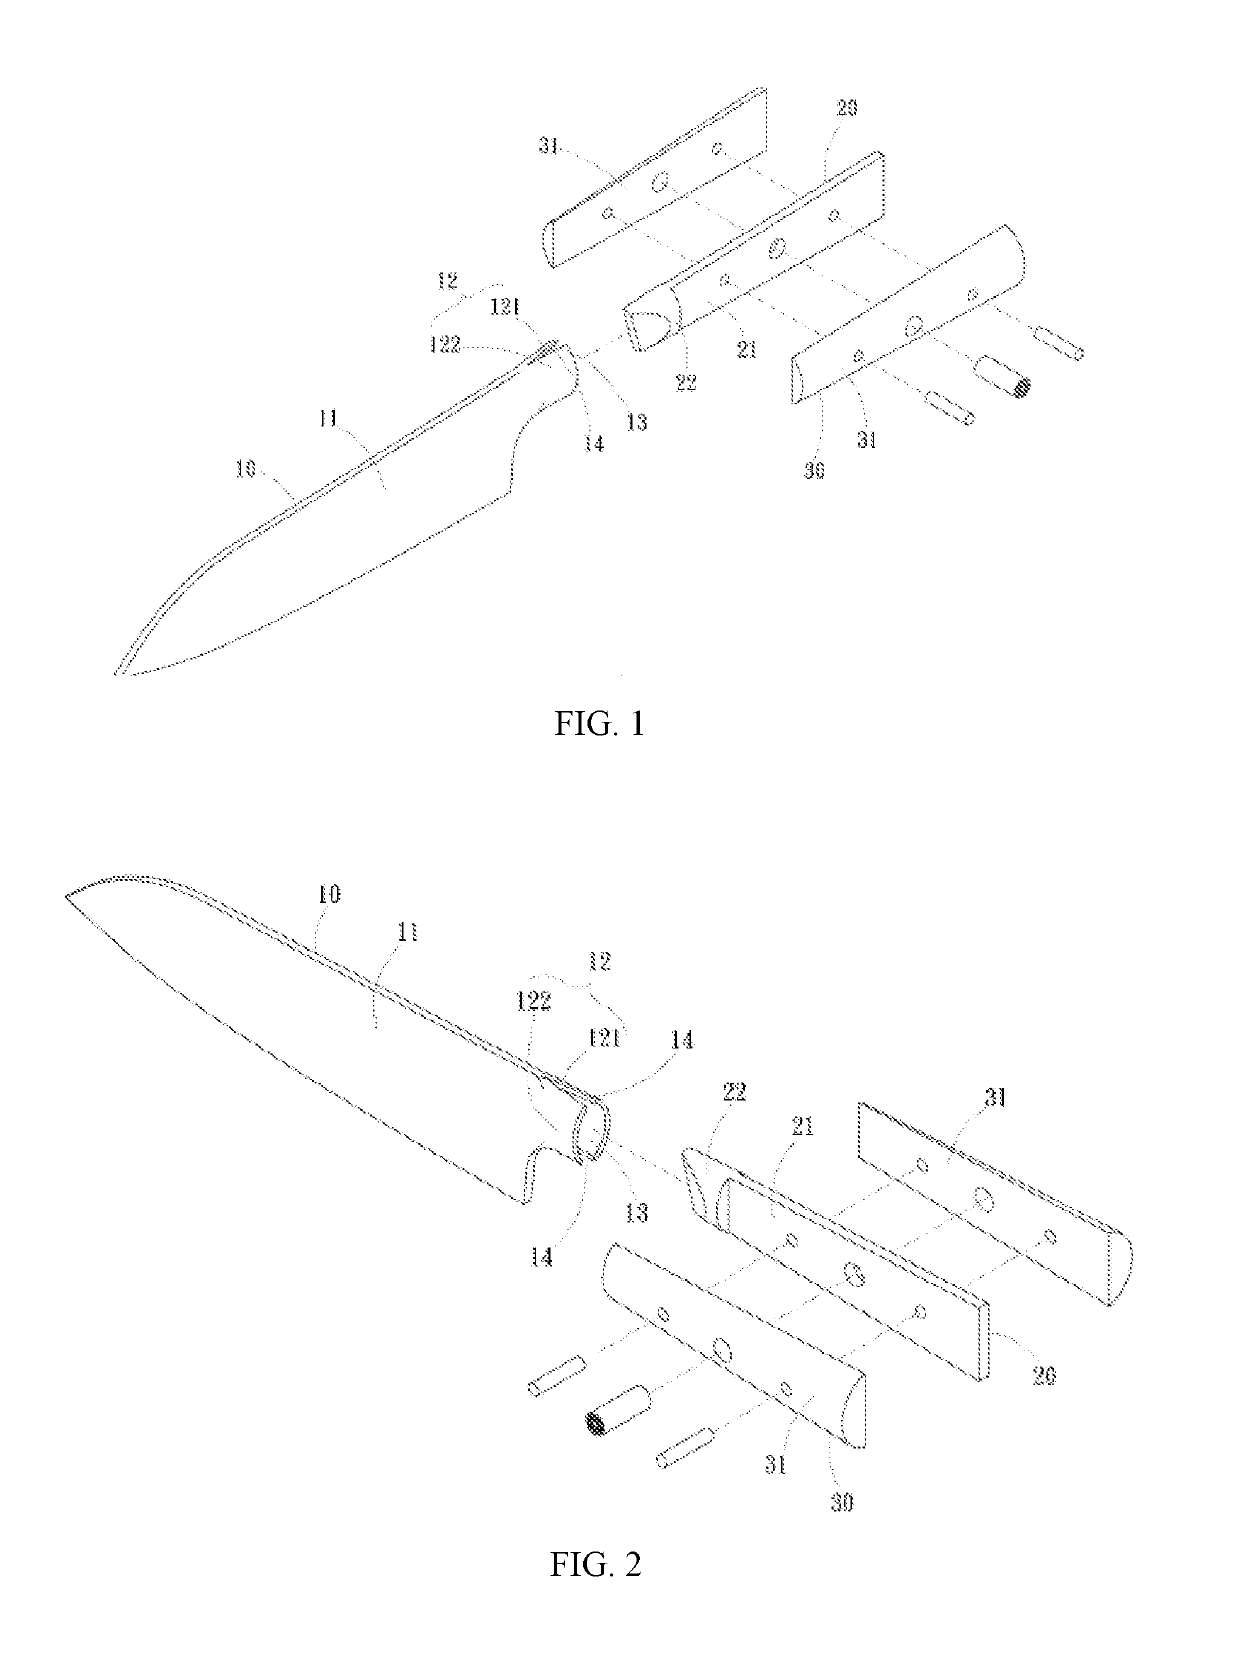 Pattern knife assembly